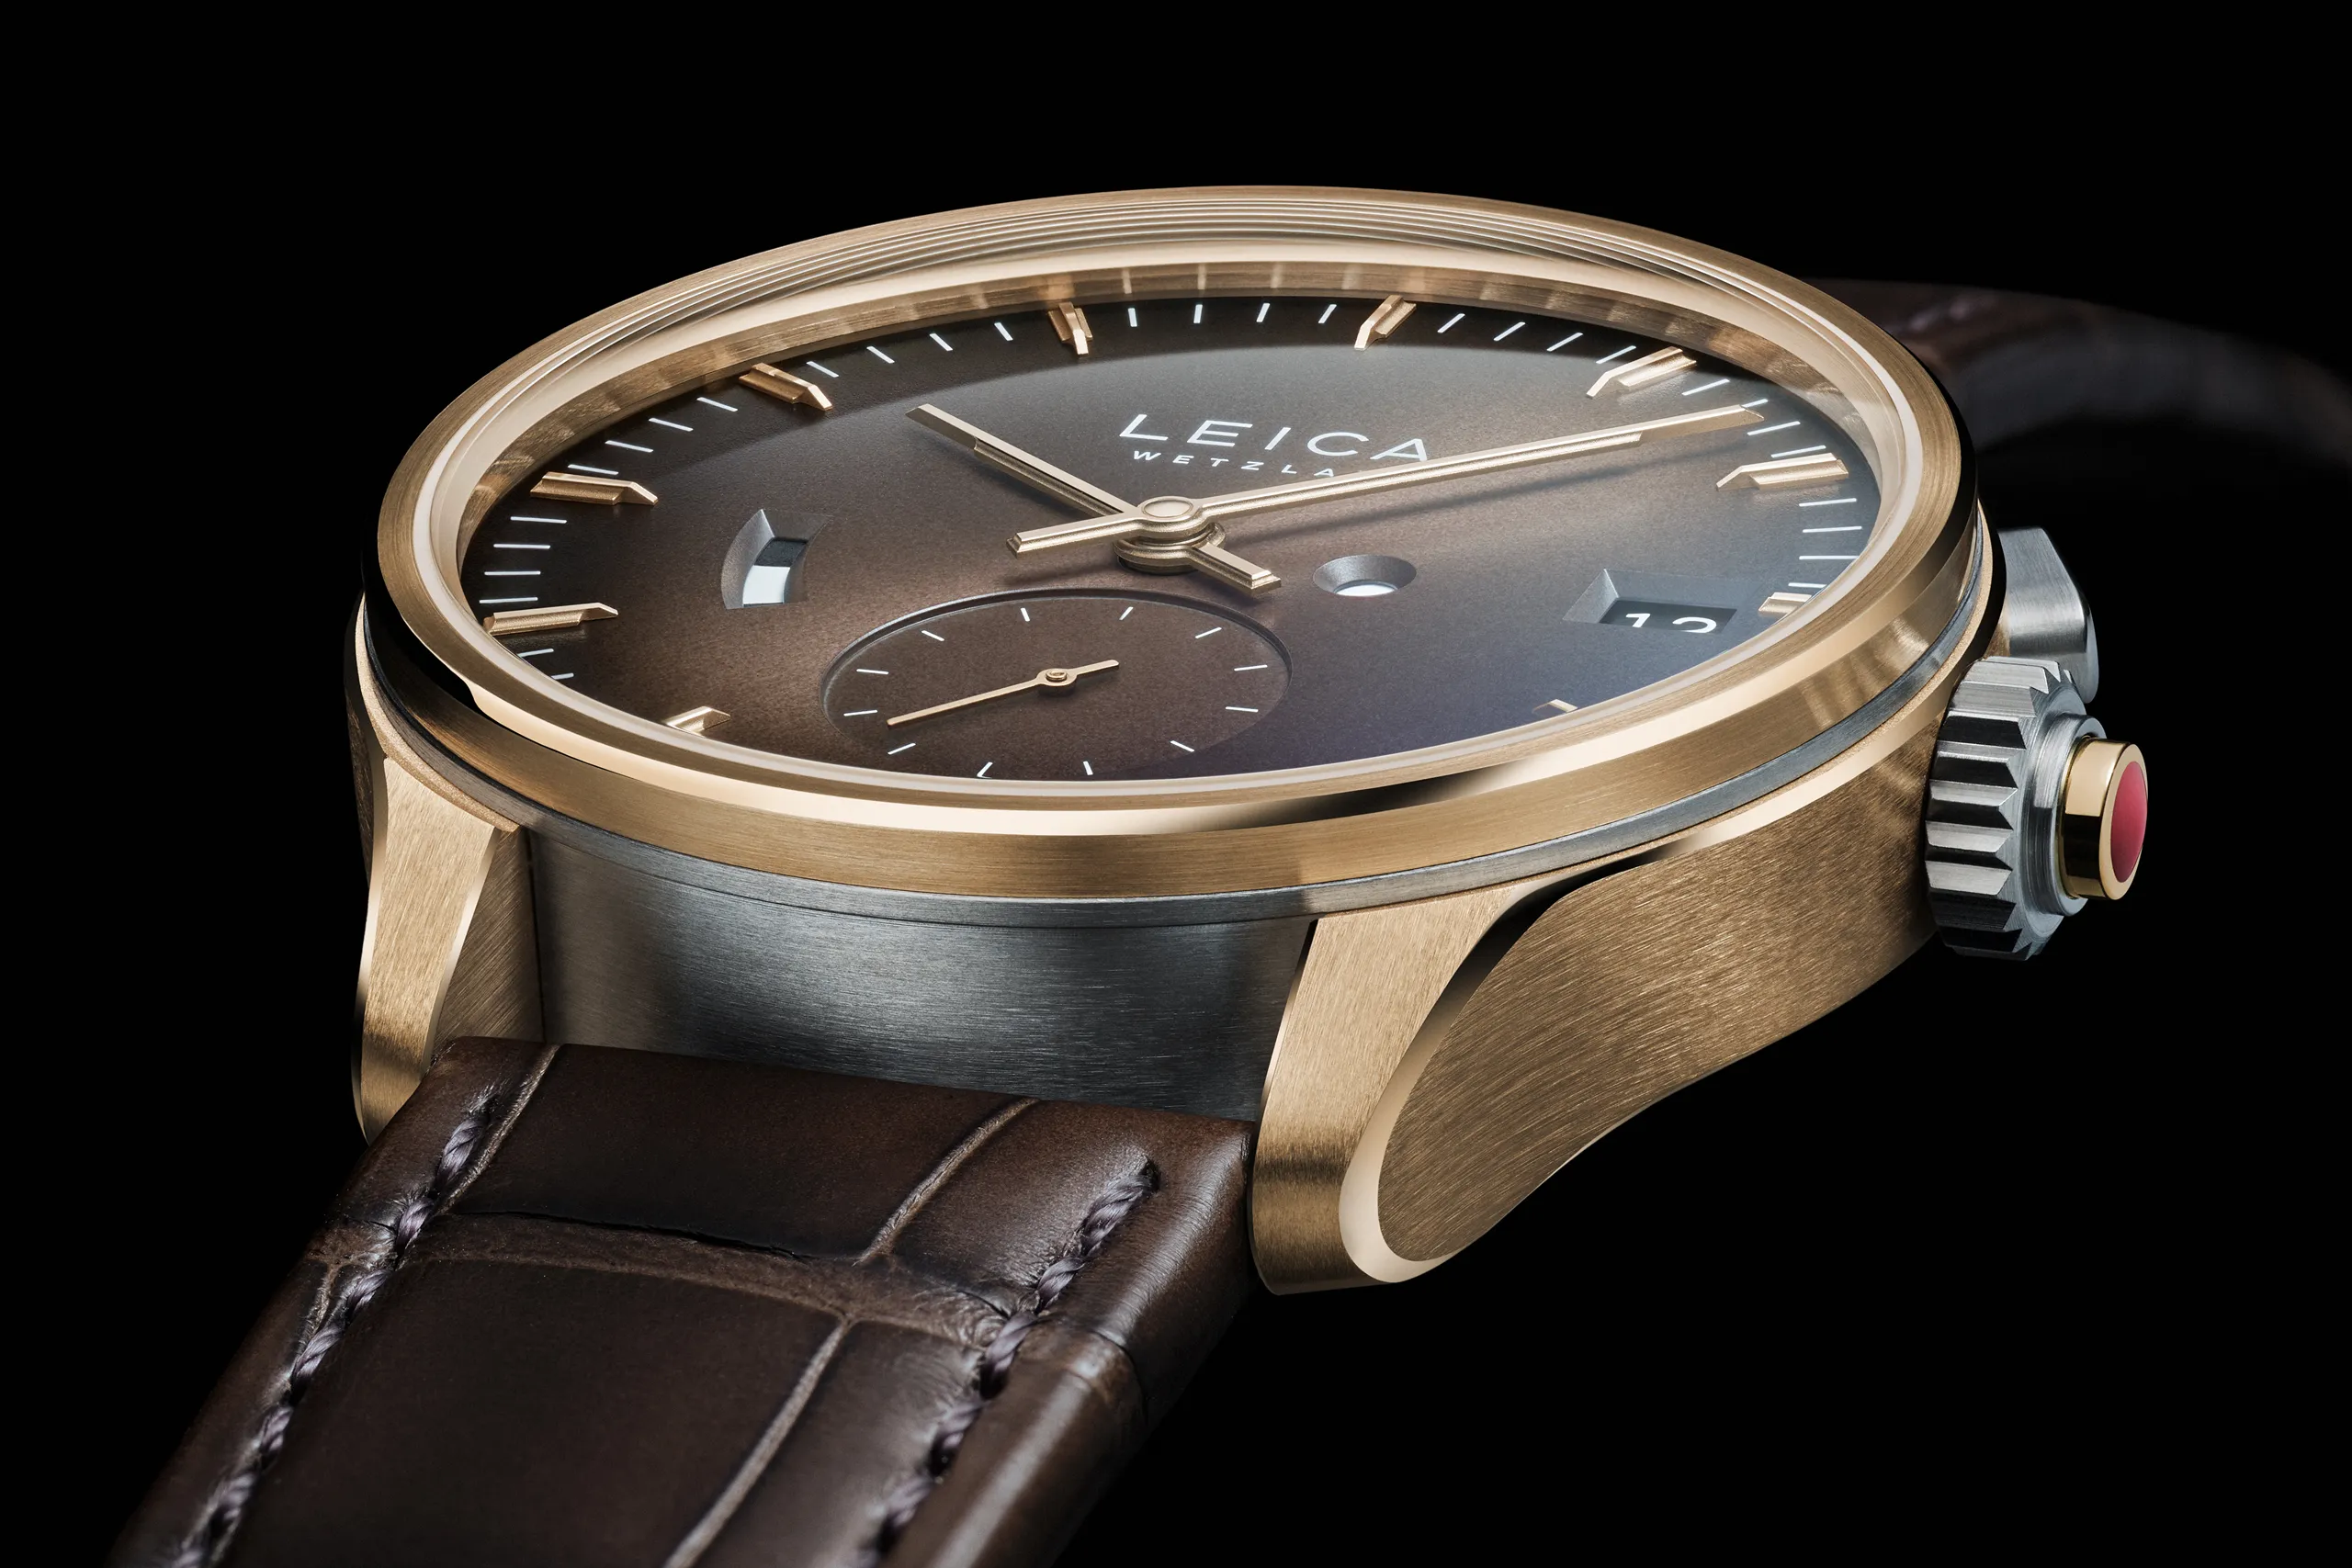 Đồng hồ Leica Watch ZM 1 Gold Limited Edition ra mắt với vẻ ngoài sang trọng, giá gần 700 triệu đồng